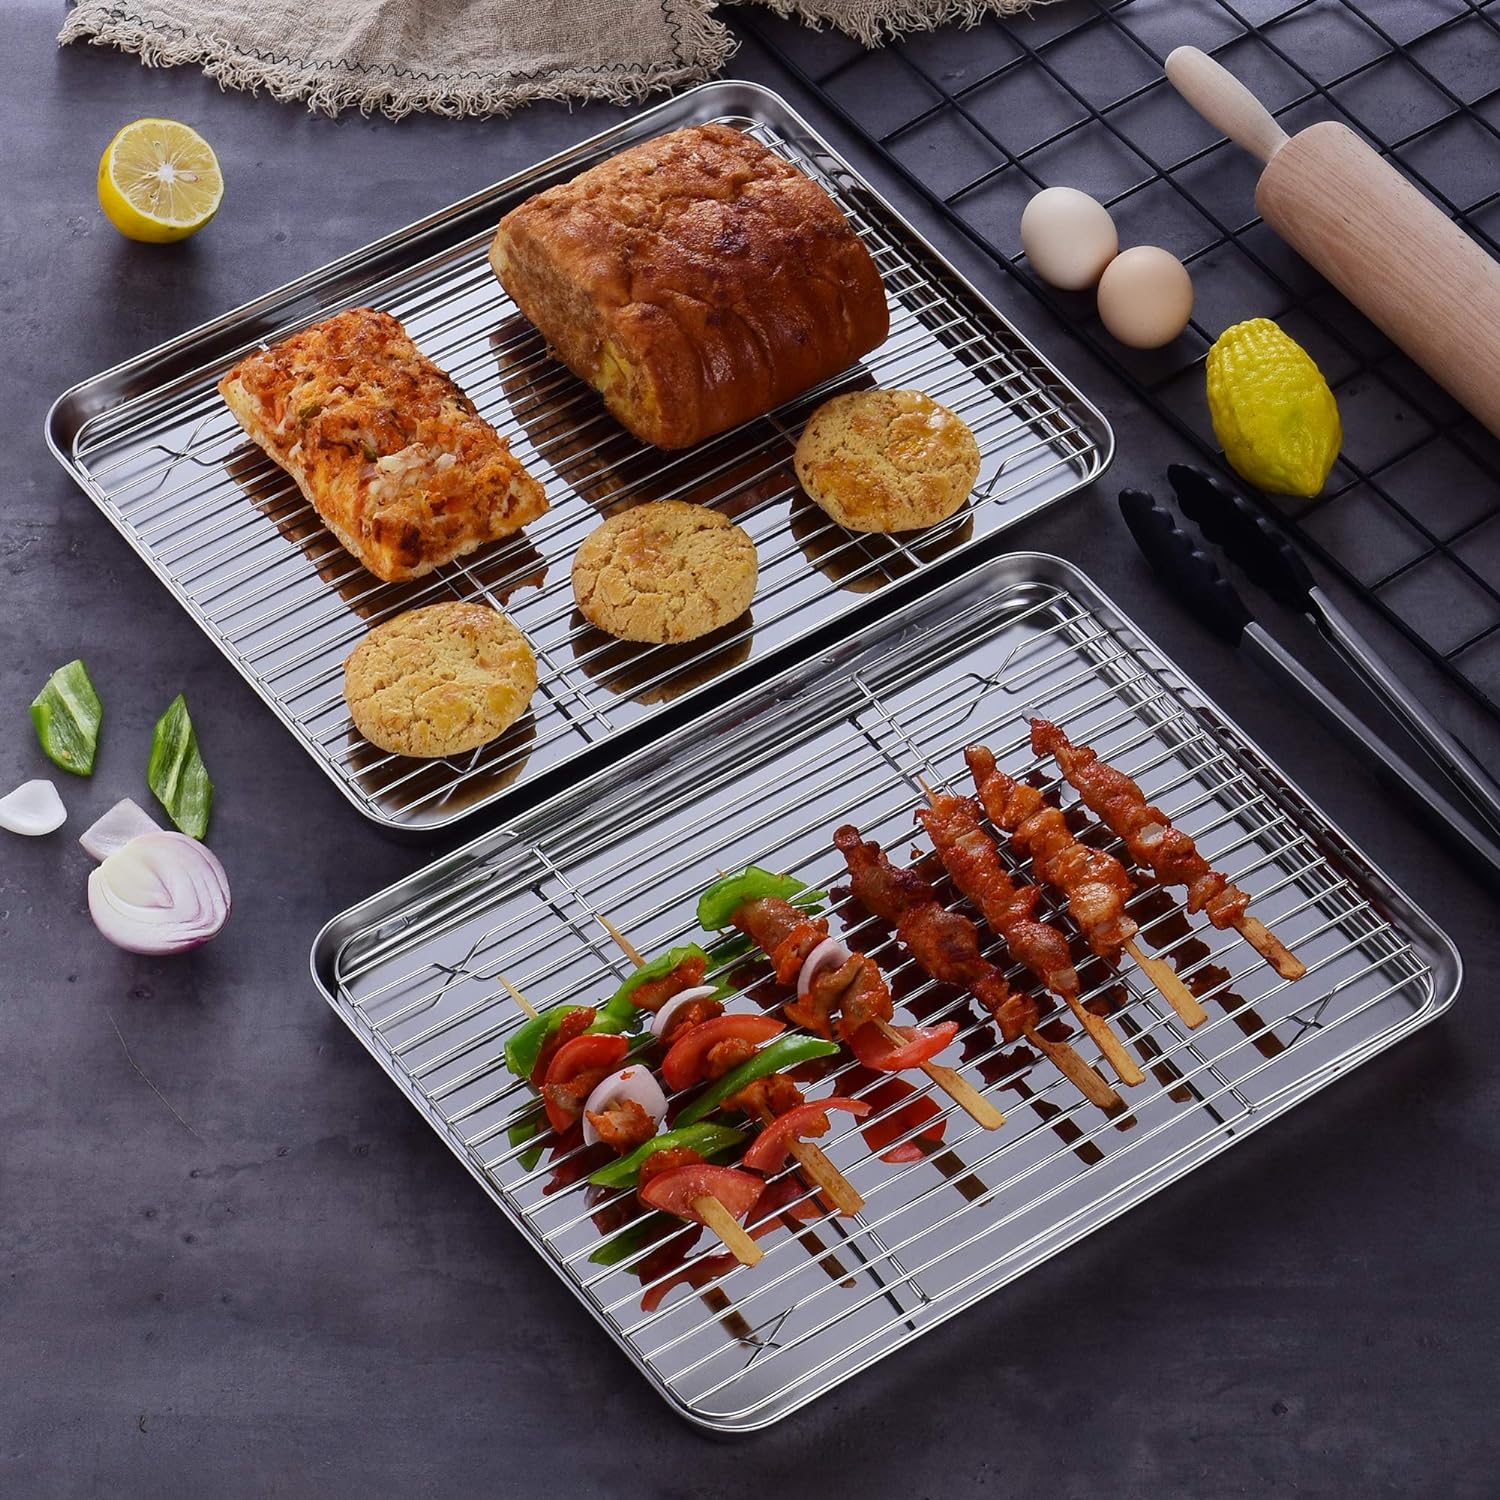 Velaze Roasting and Baking Tray with Rack